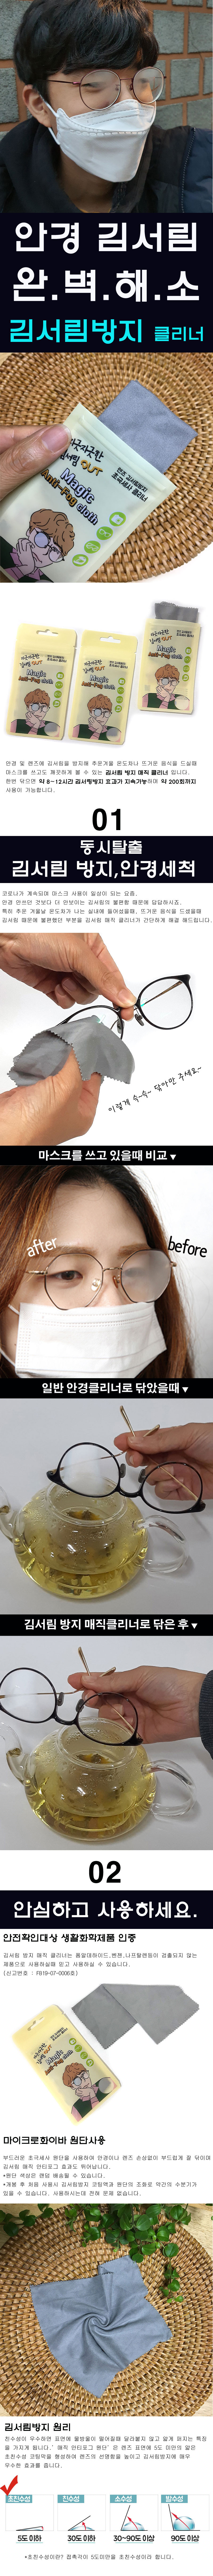 clean_eyeglasses_detail_01.jpg